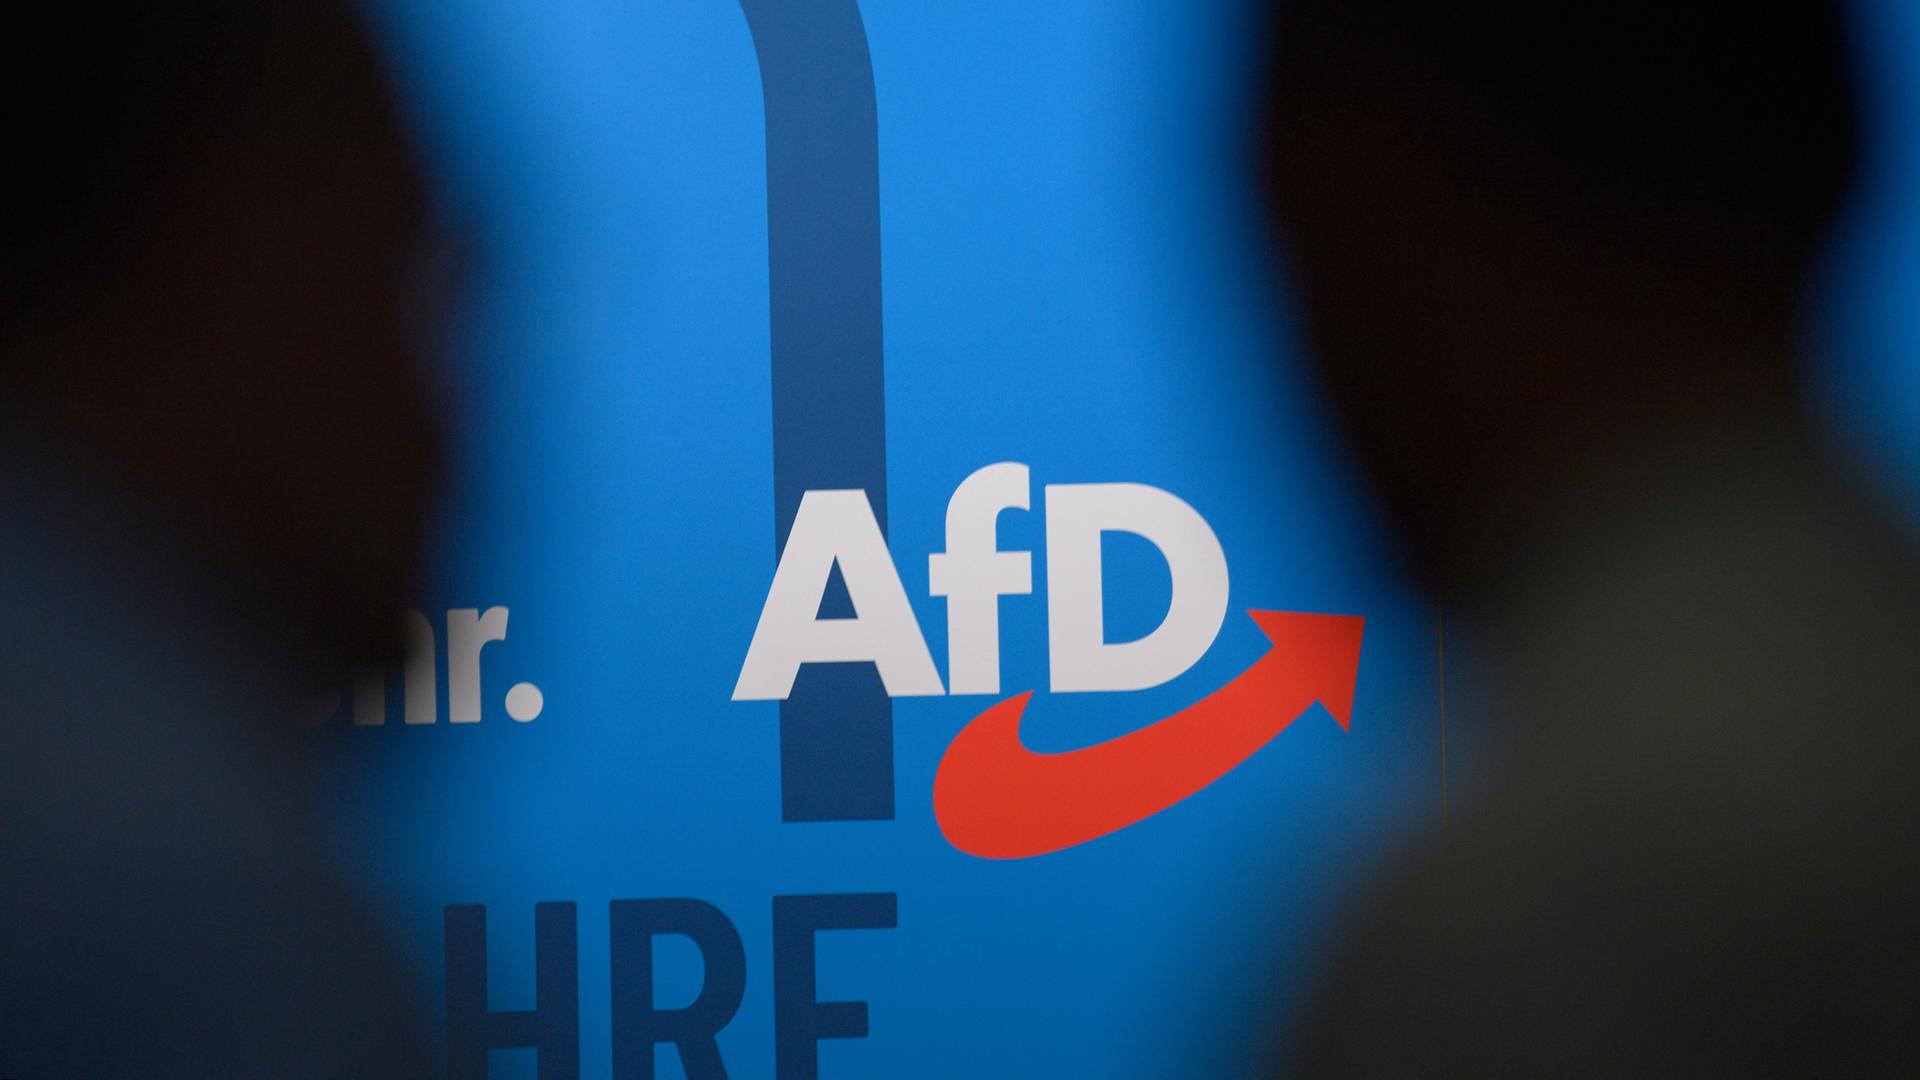 Auf einer blauen Wand steht das Logo der AfD, links und rechts die Silhouetten zweier dunkler Köpfe.